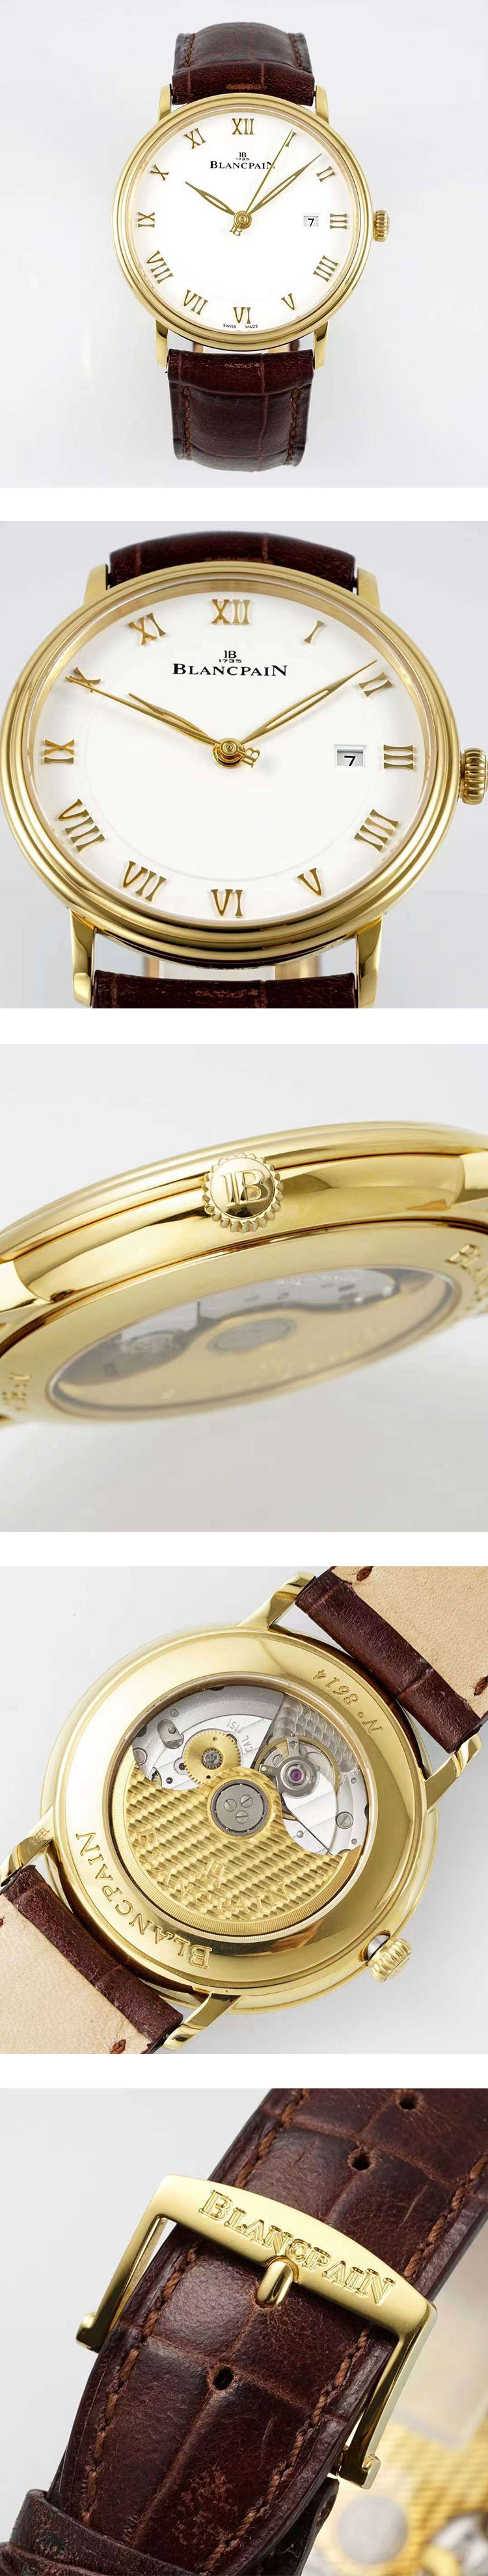 愛用腕時計ブランパンコピー時計 ヴィルレ ウルトラスリム JB6651 【APS製工場高品質】